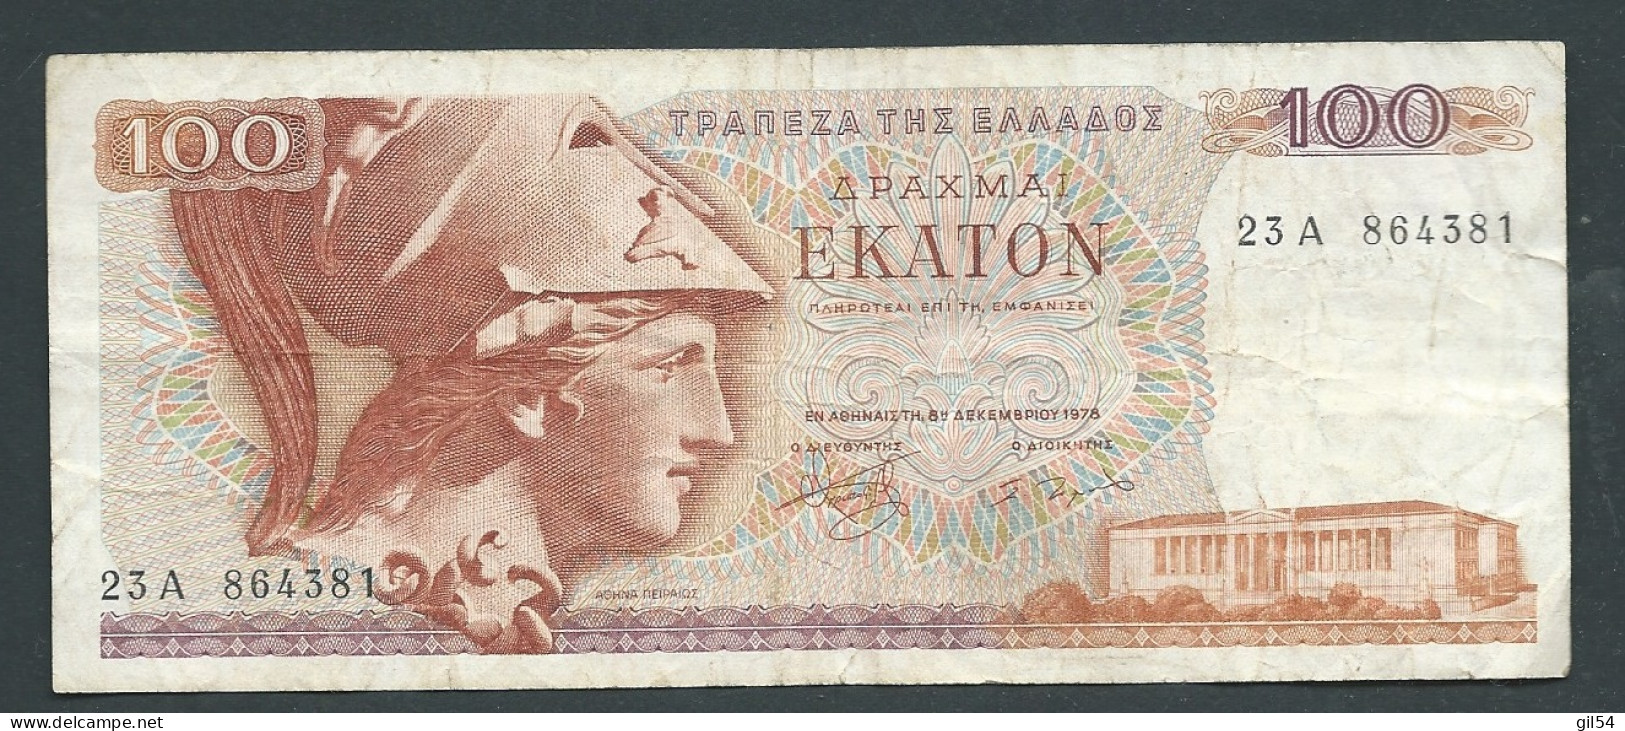 Grèce - Billet De 100 Drachmes 1978   -   23A864381-  Laura 10205 - Grecia